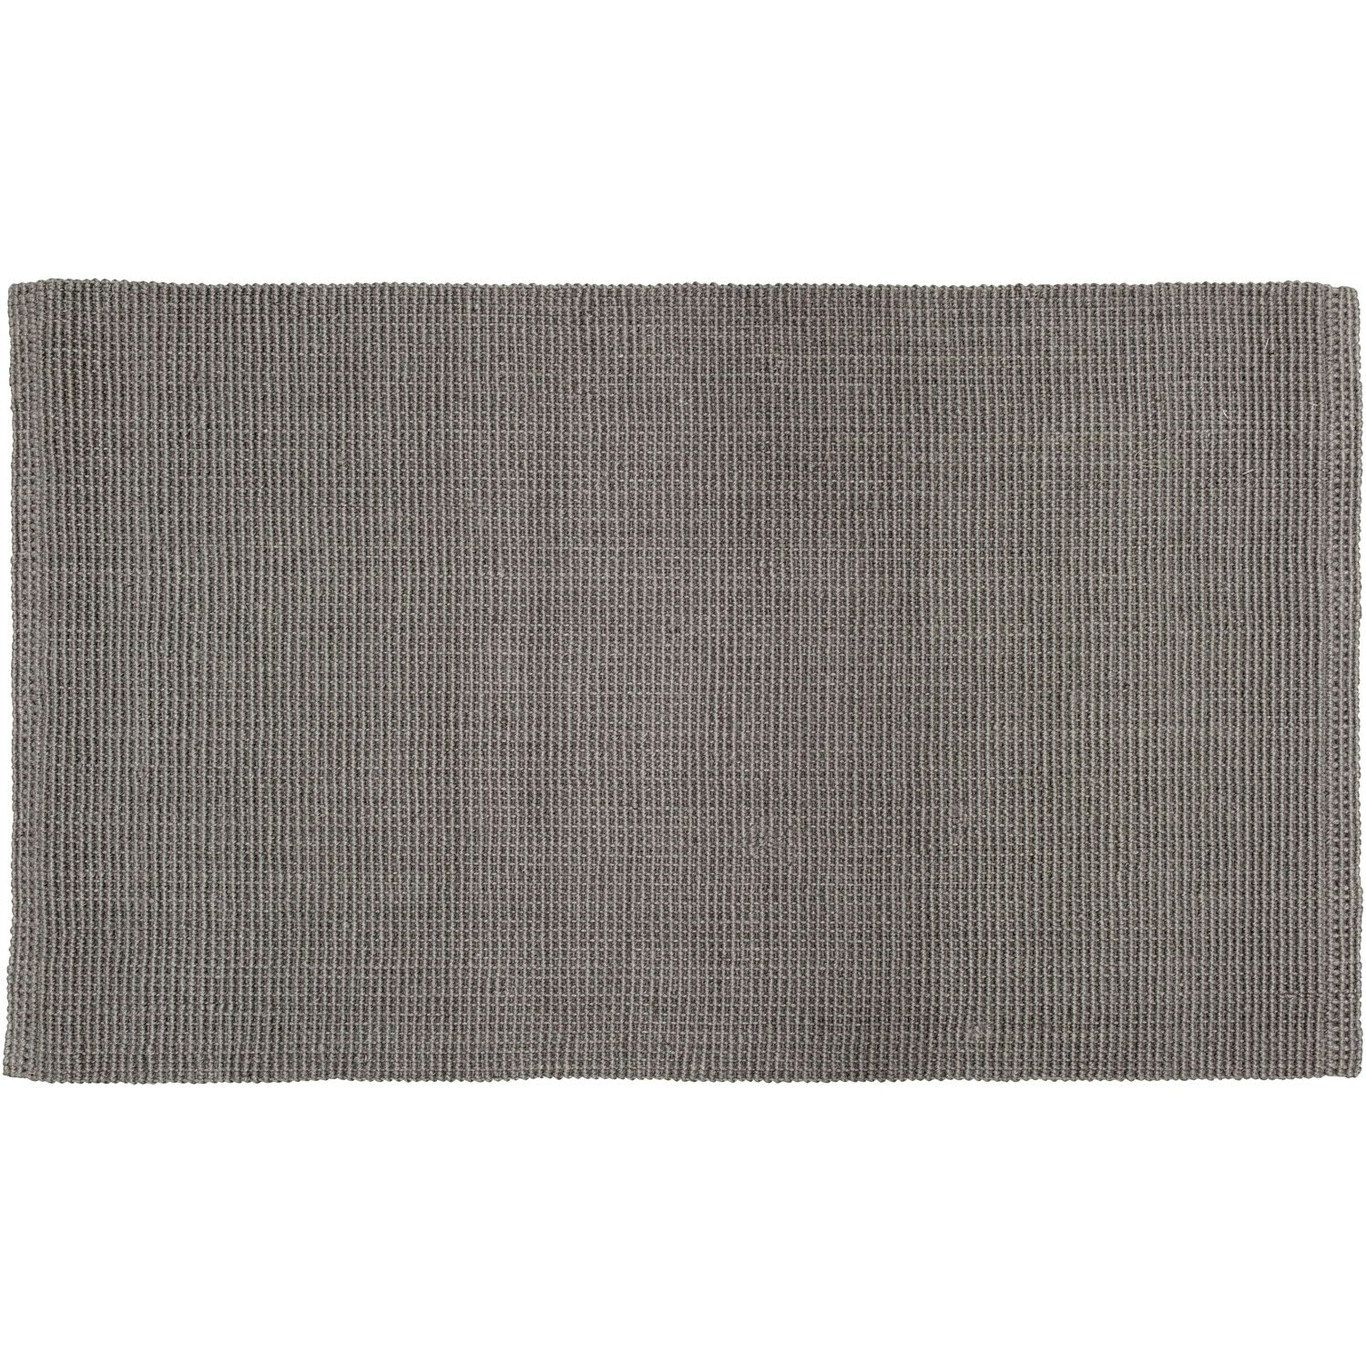 Fiona Ovimatto 70x120 cm, Cement Grey